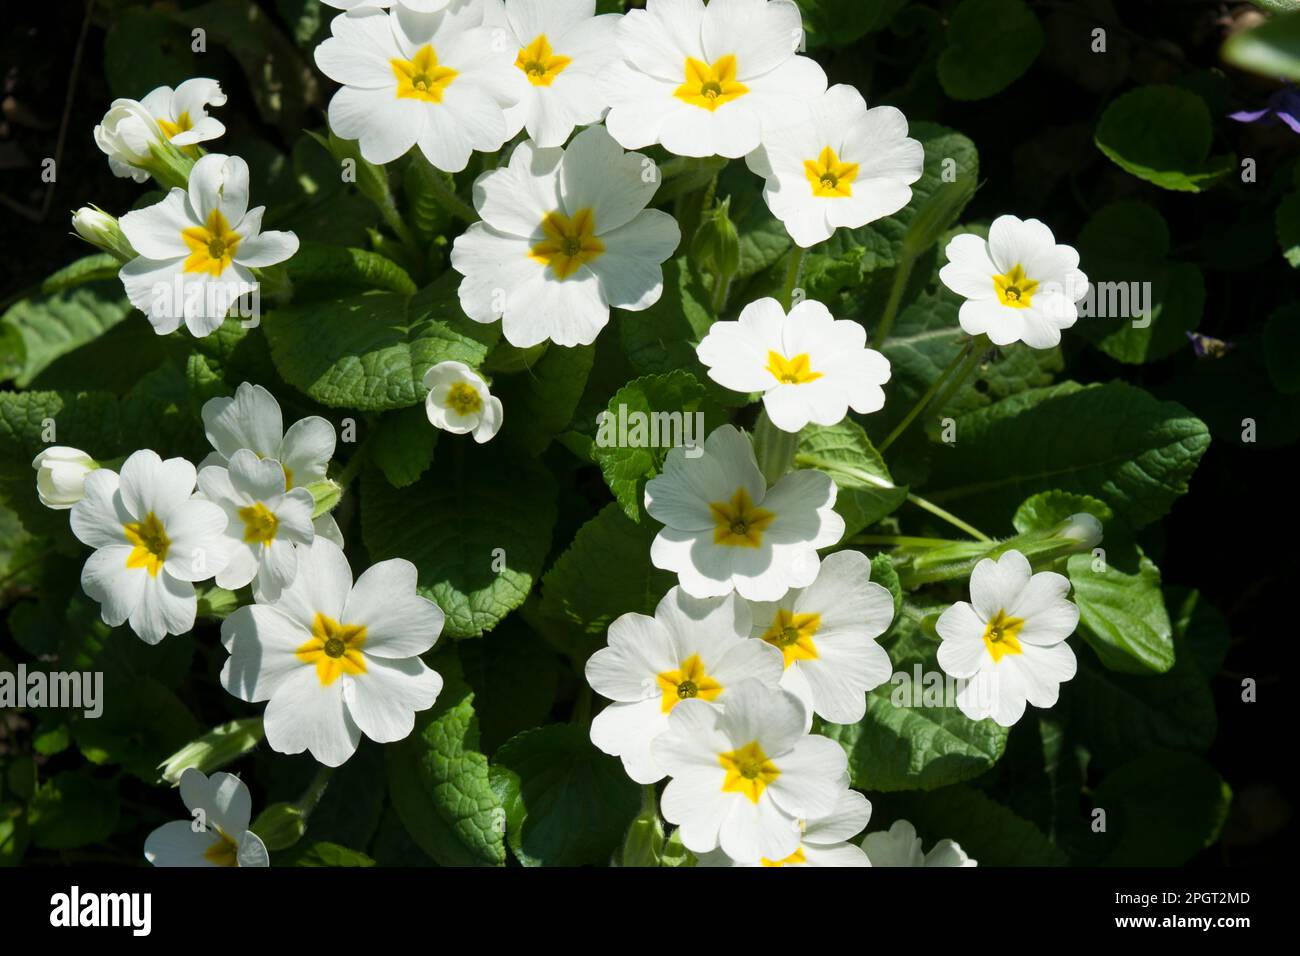 Primula vulgaris, la onagra común, la onagra inglesa, una planta con flores entre las primeras en aparecer en primavera. Flores blancas delicadamente perfumadas. Foto de stock